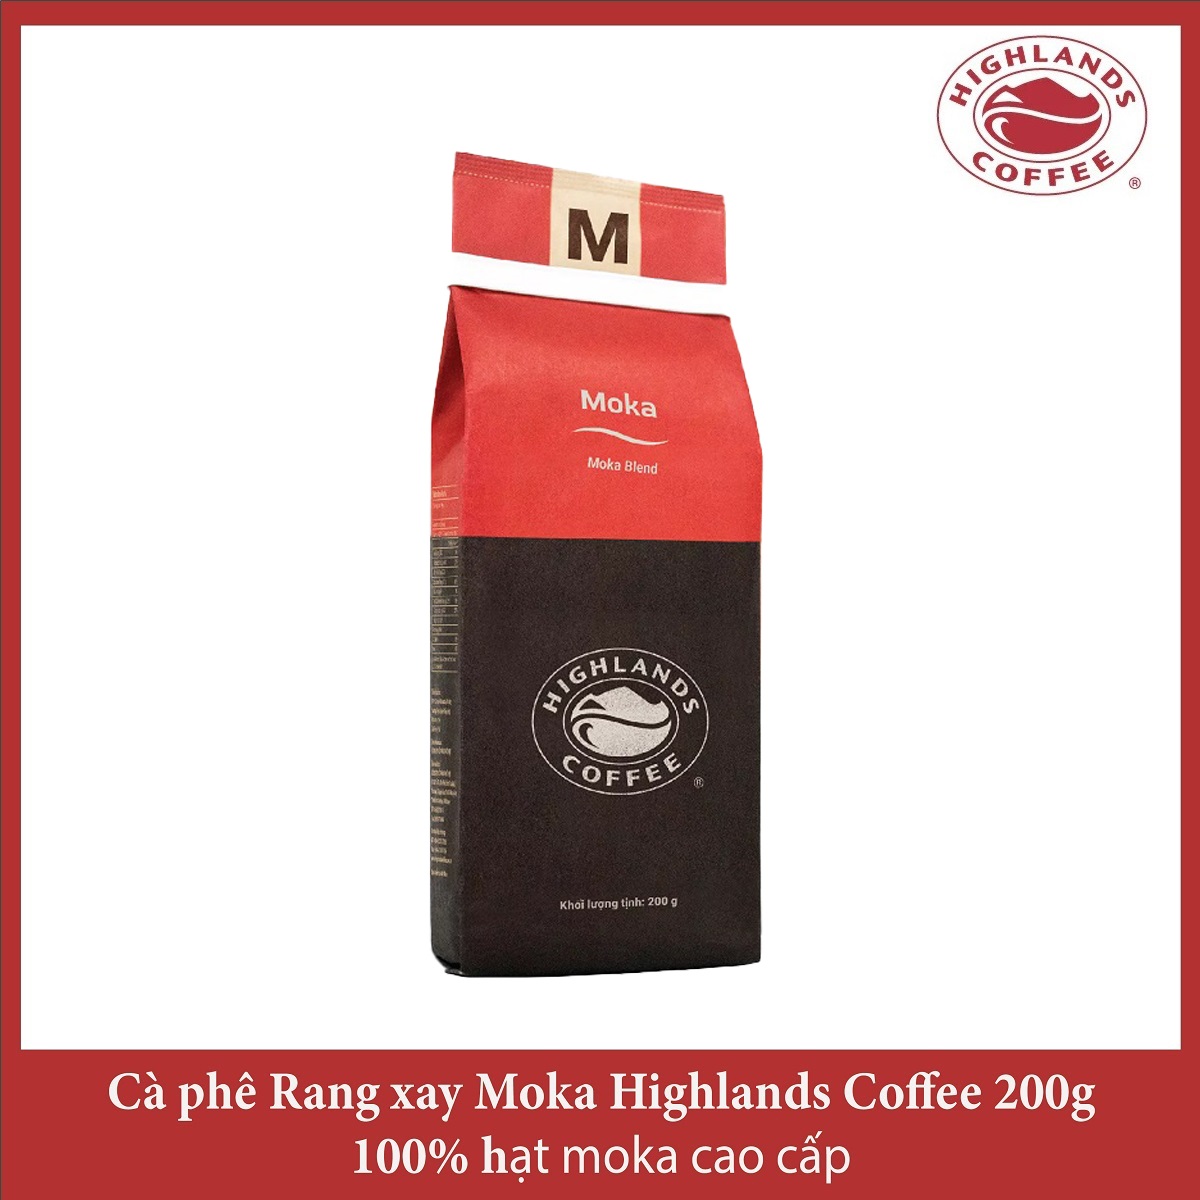 Moka Blend Thùng 12 gói Cà phê Rang xay Moka Highlands Coffee 200g